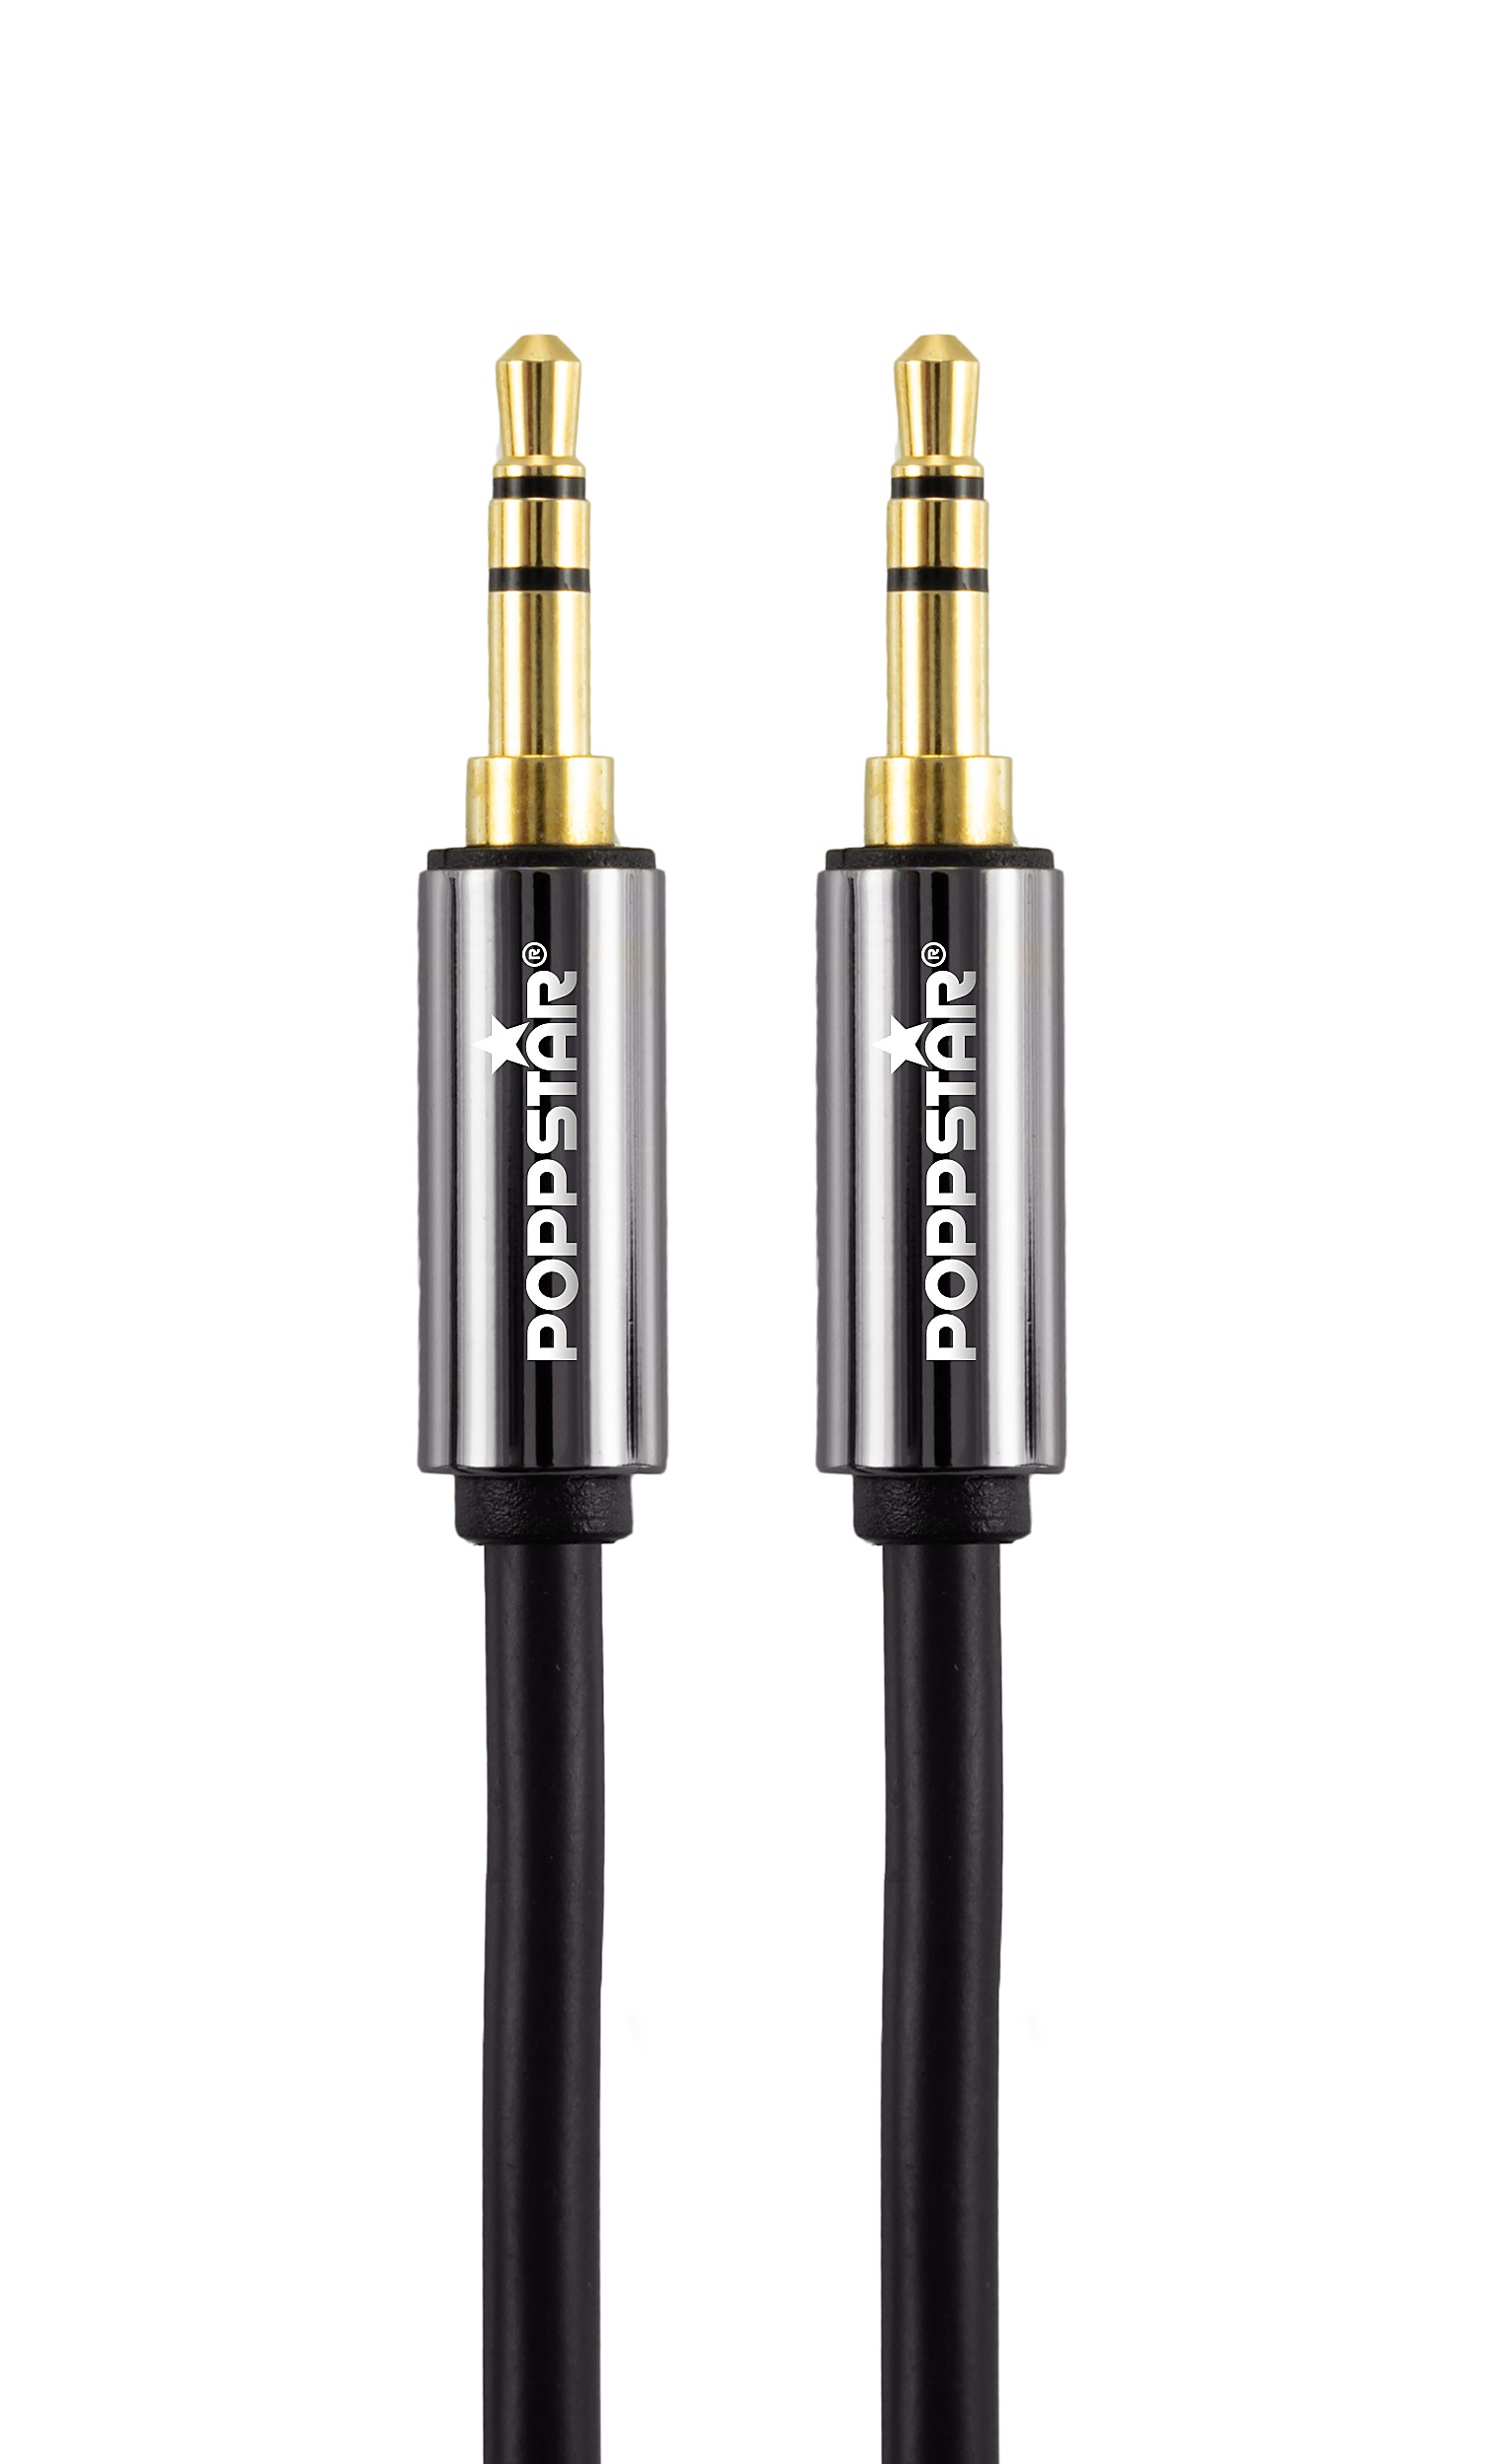 HQ Audio-Klinkenkabel 0,5 m mit Klinkenstecker 3,5 mm vergoldet